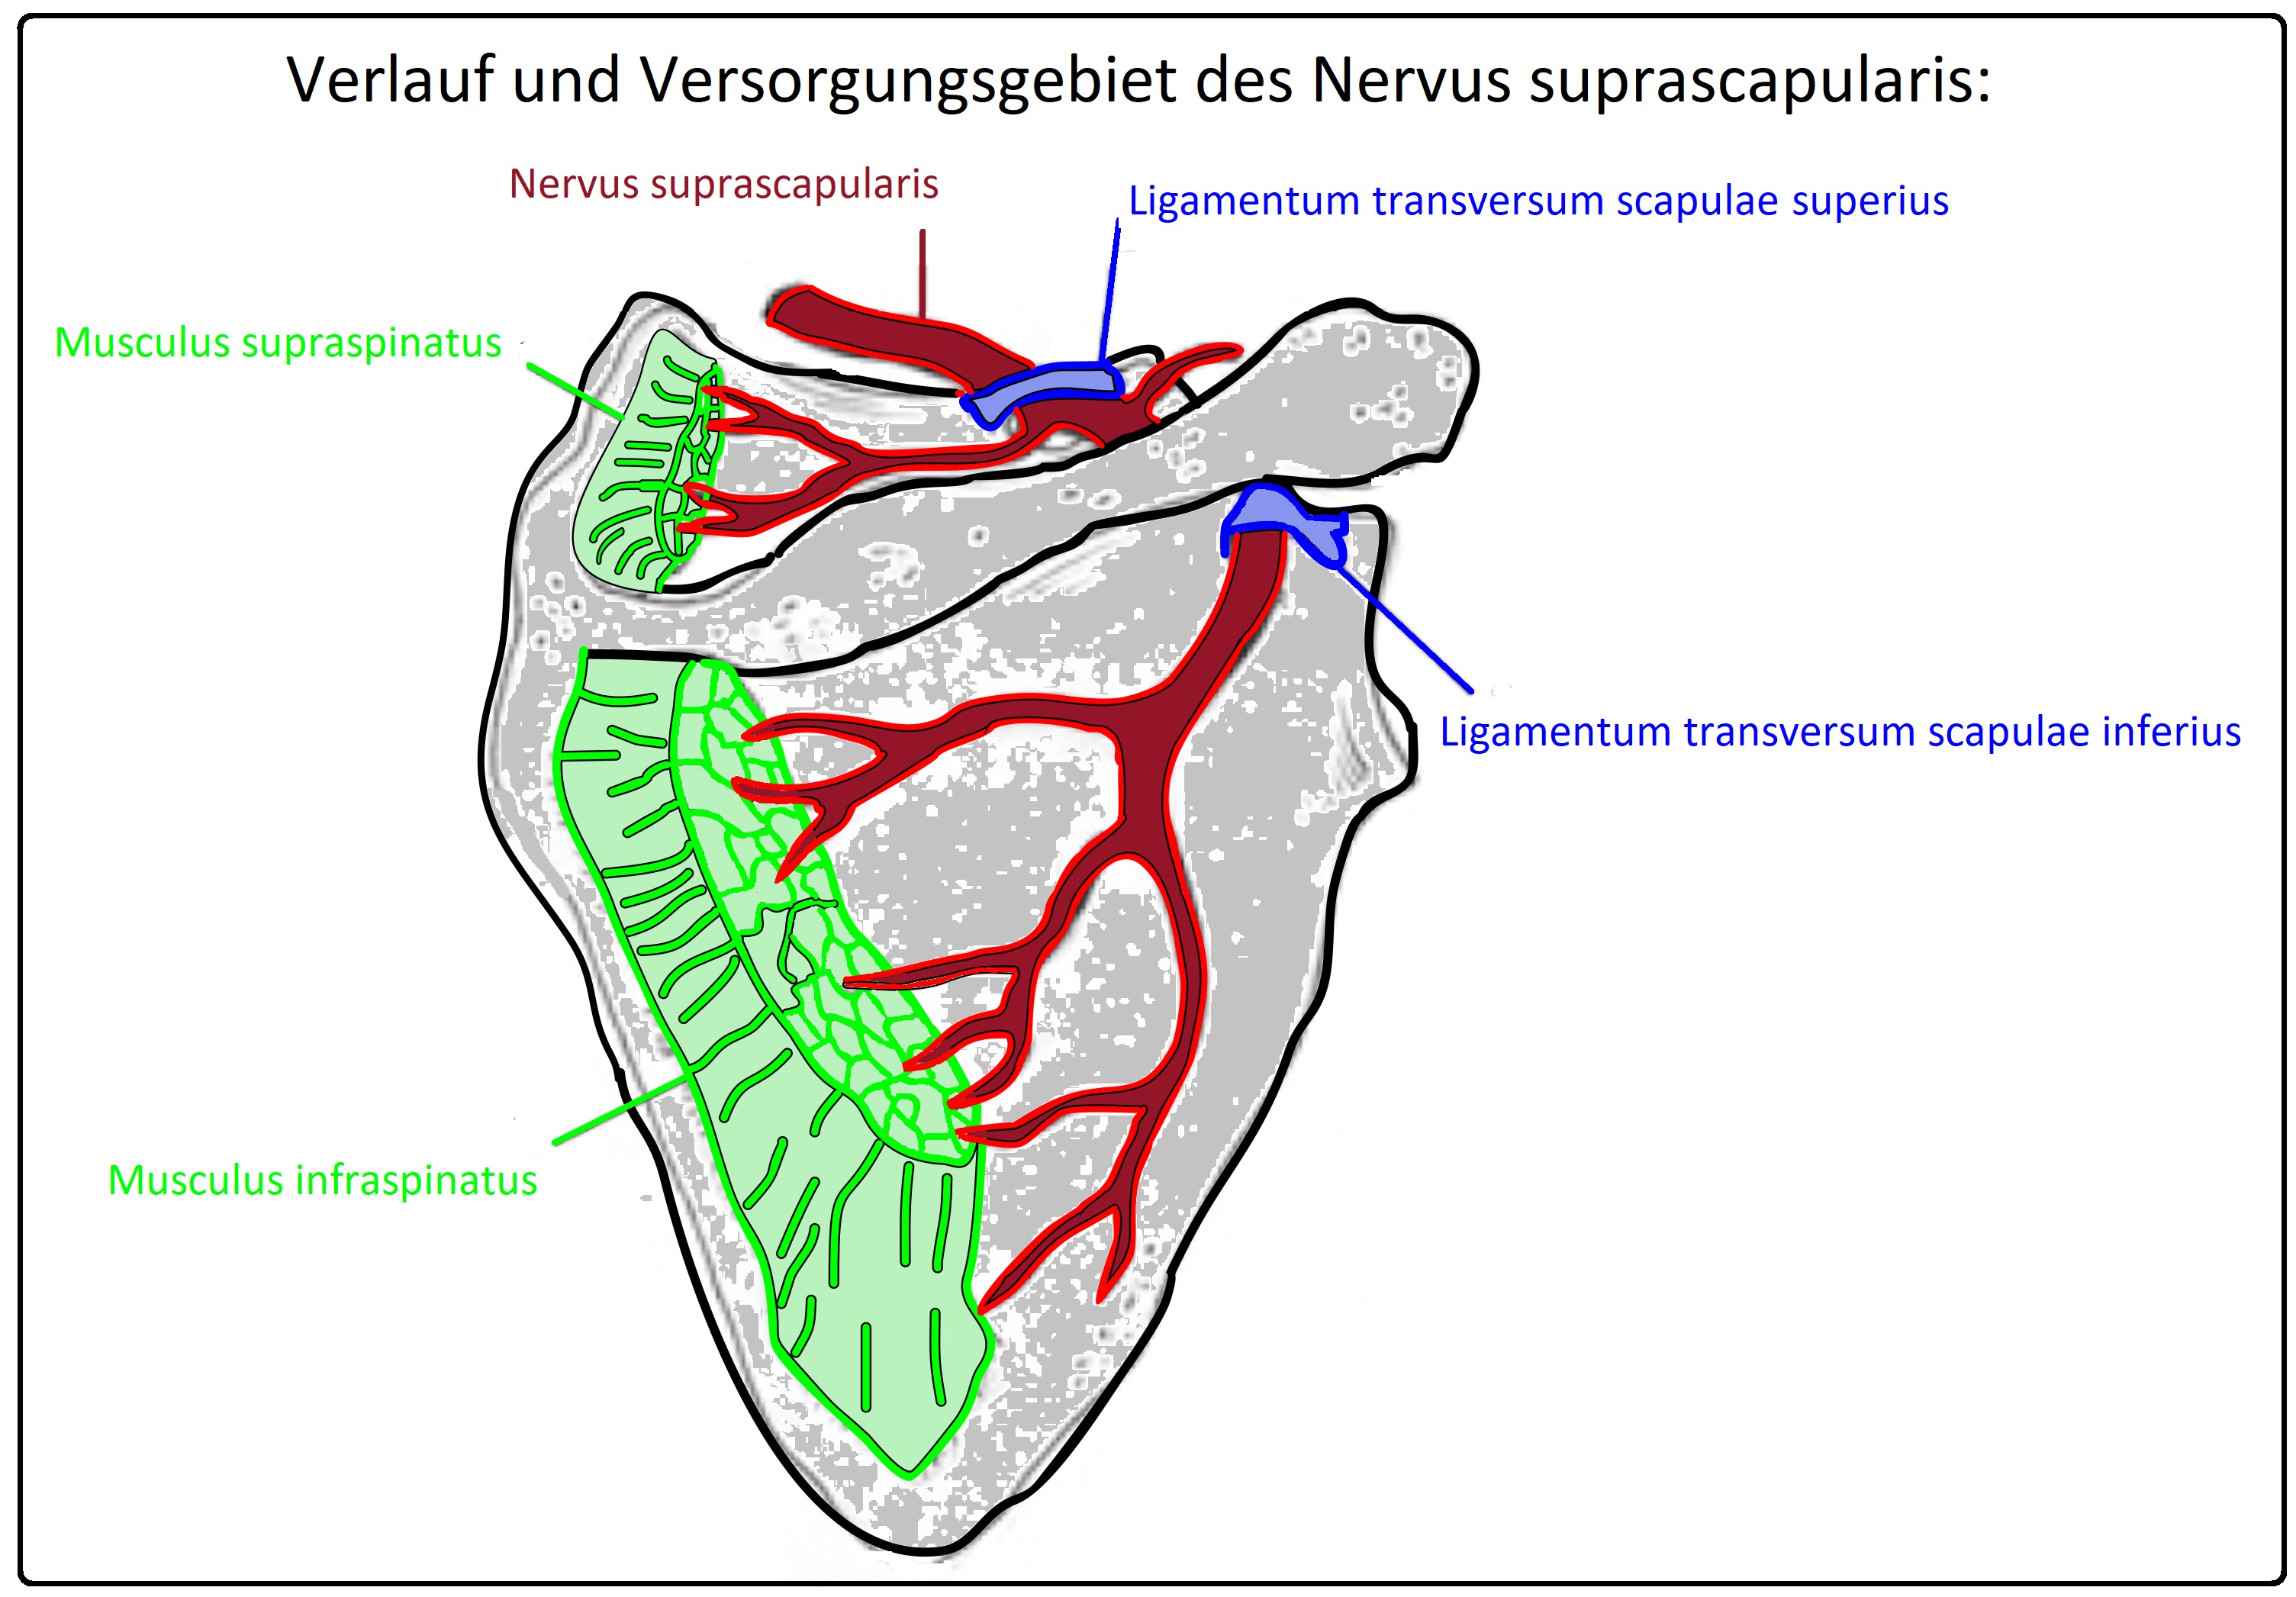 493 Verlauf und Versorgungsgebiet des Nervus suprascapularis